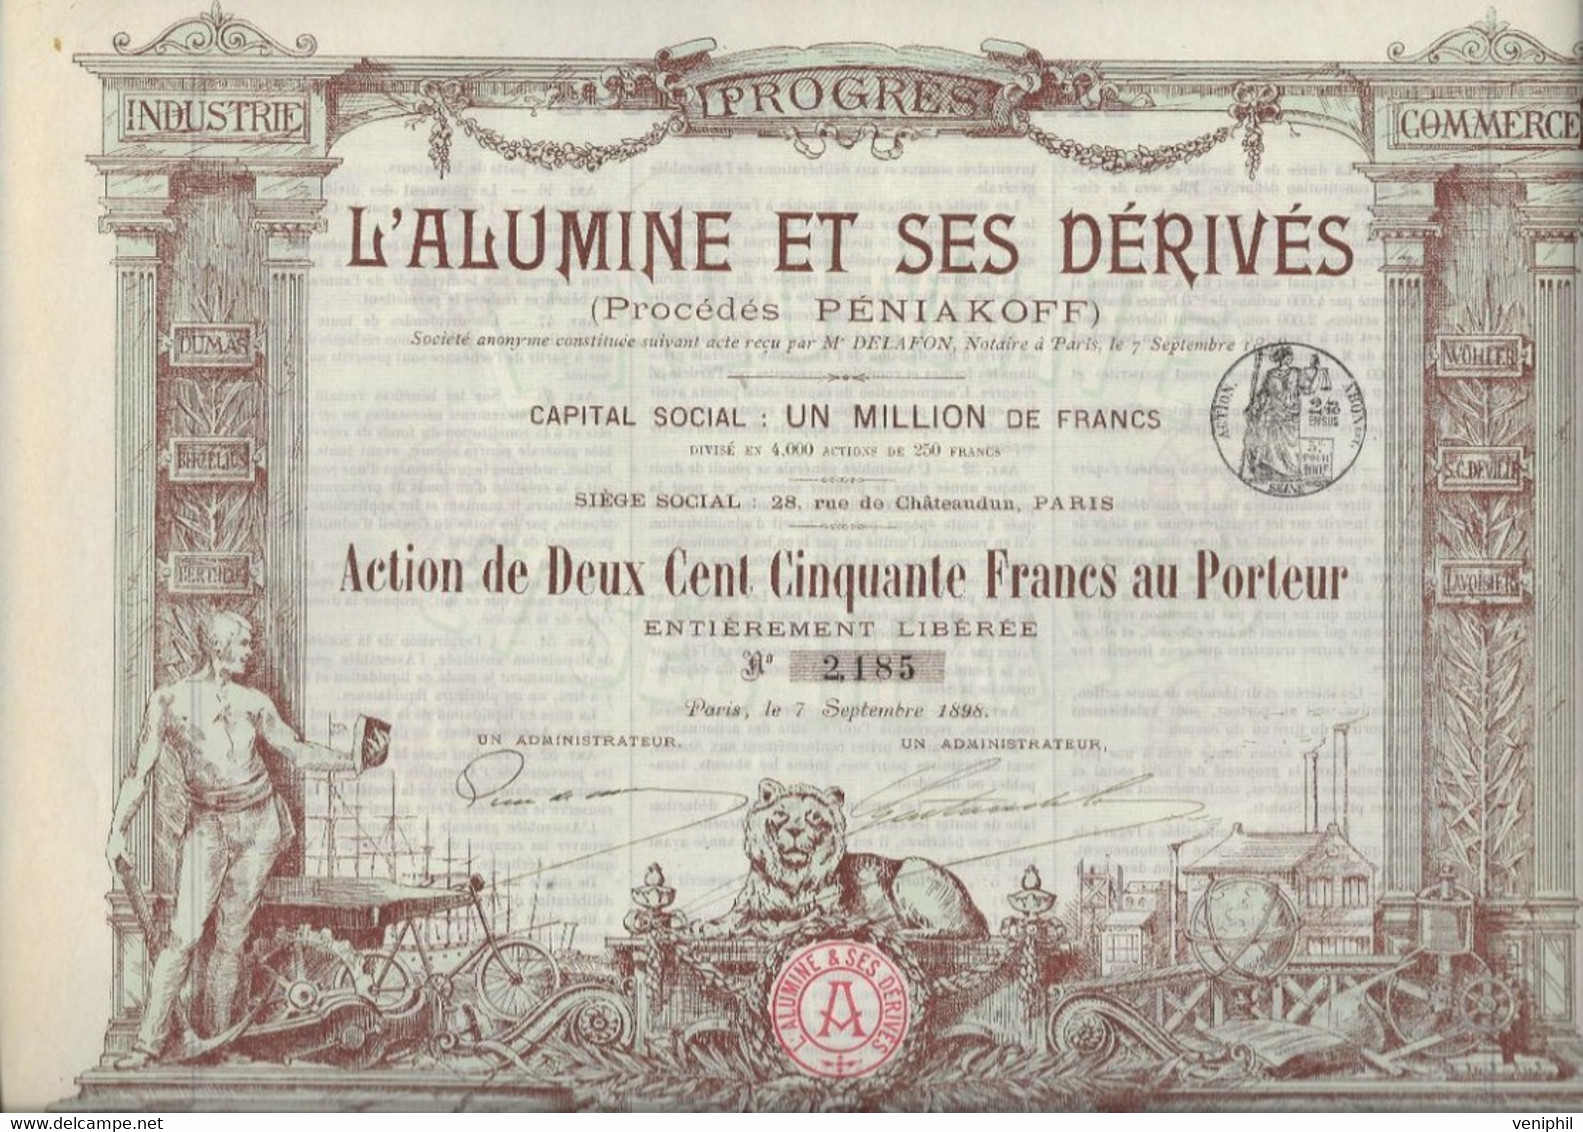 L'ALUMINE ET SES DERIVES -PROCEDE PENIAKOFF - DIVISE EN 4000 ACTIONS DE DEUX CENT CINQUANTE FRANCS -ANNEE 1898 - Mineral